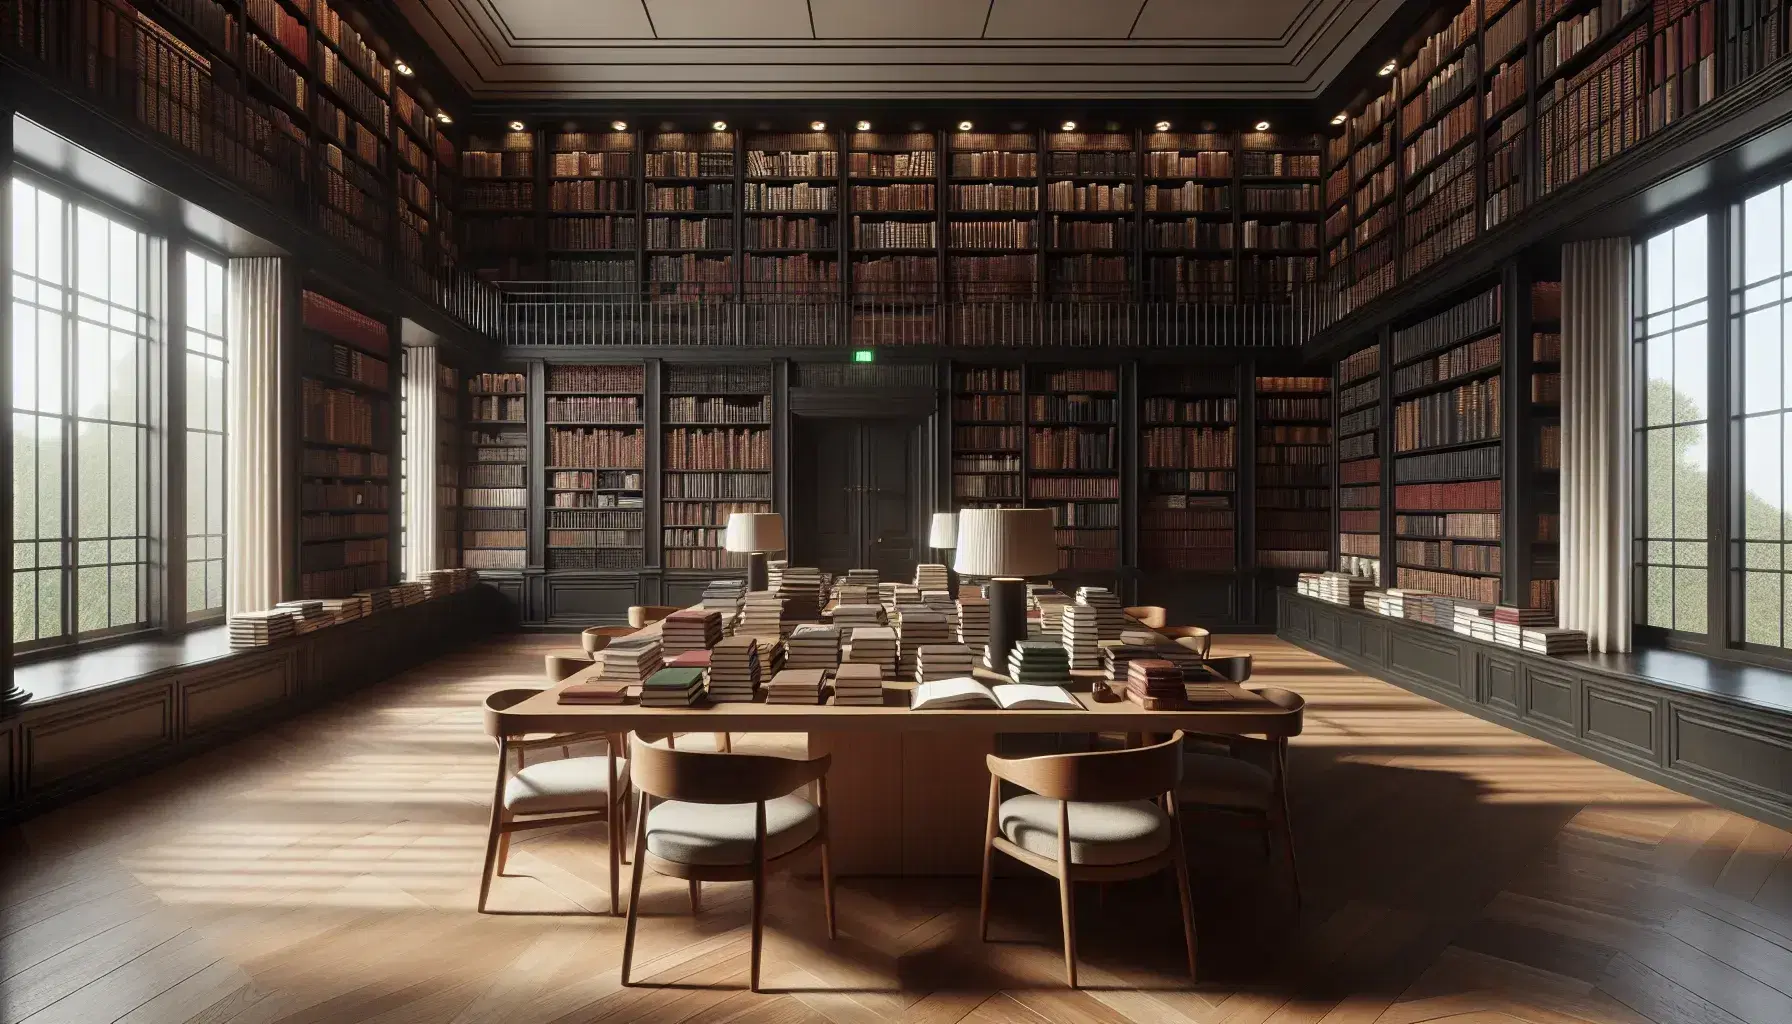 Biblioteca espaciosa con estanterías de madera oscura llenas de libros, mesa central con libros abiertos y sillas a su alrededor, ventana grande que ilumina el suelo de parqué.